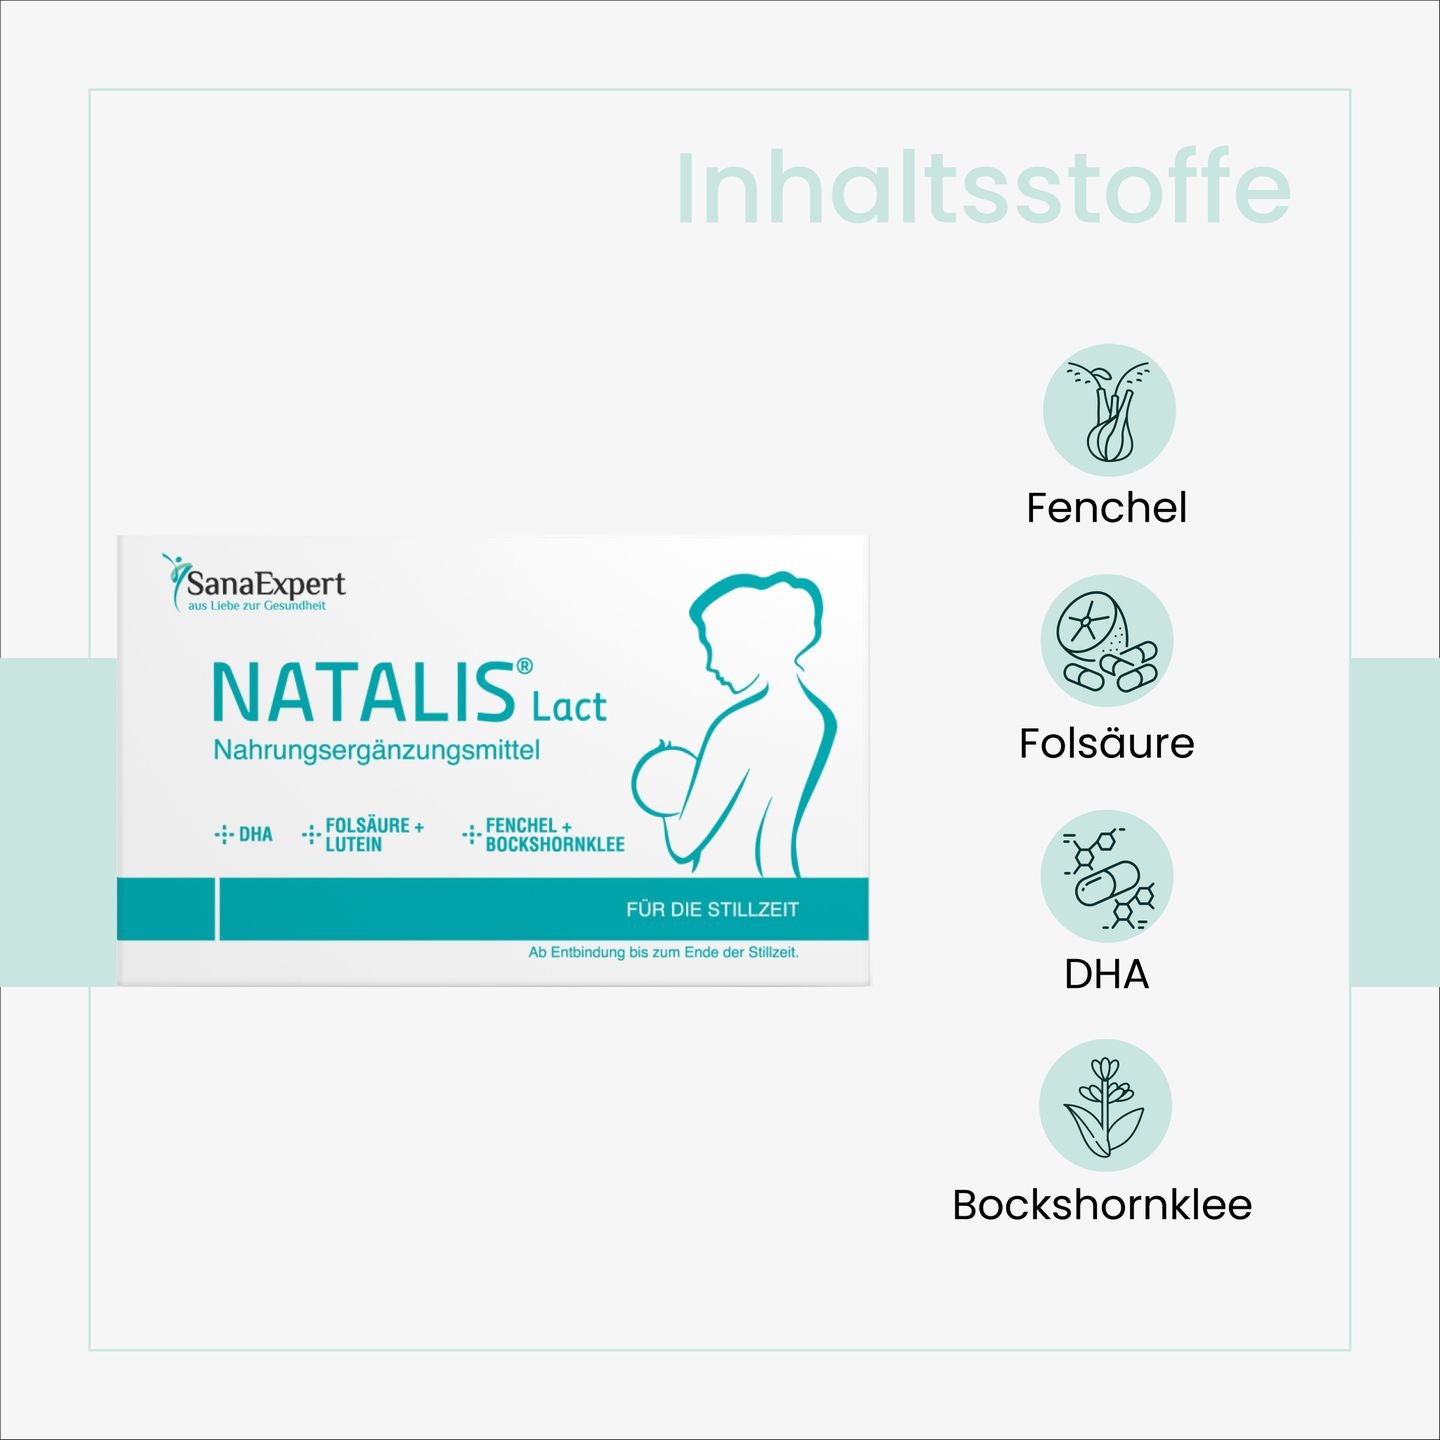 Grafische Darstellung der Hauptinhaltsstoffe von Natalis Lact, einschließlich Fenchel, Folsäure, DHA und Bockshornklee, für die Stillzeit.